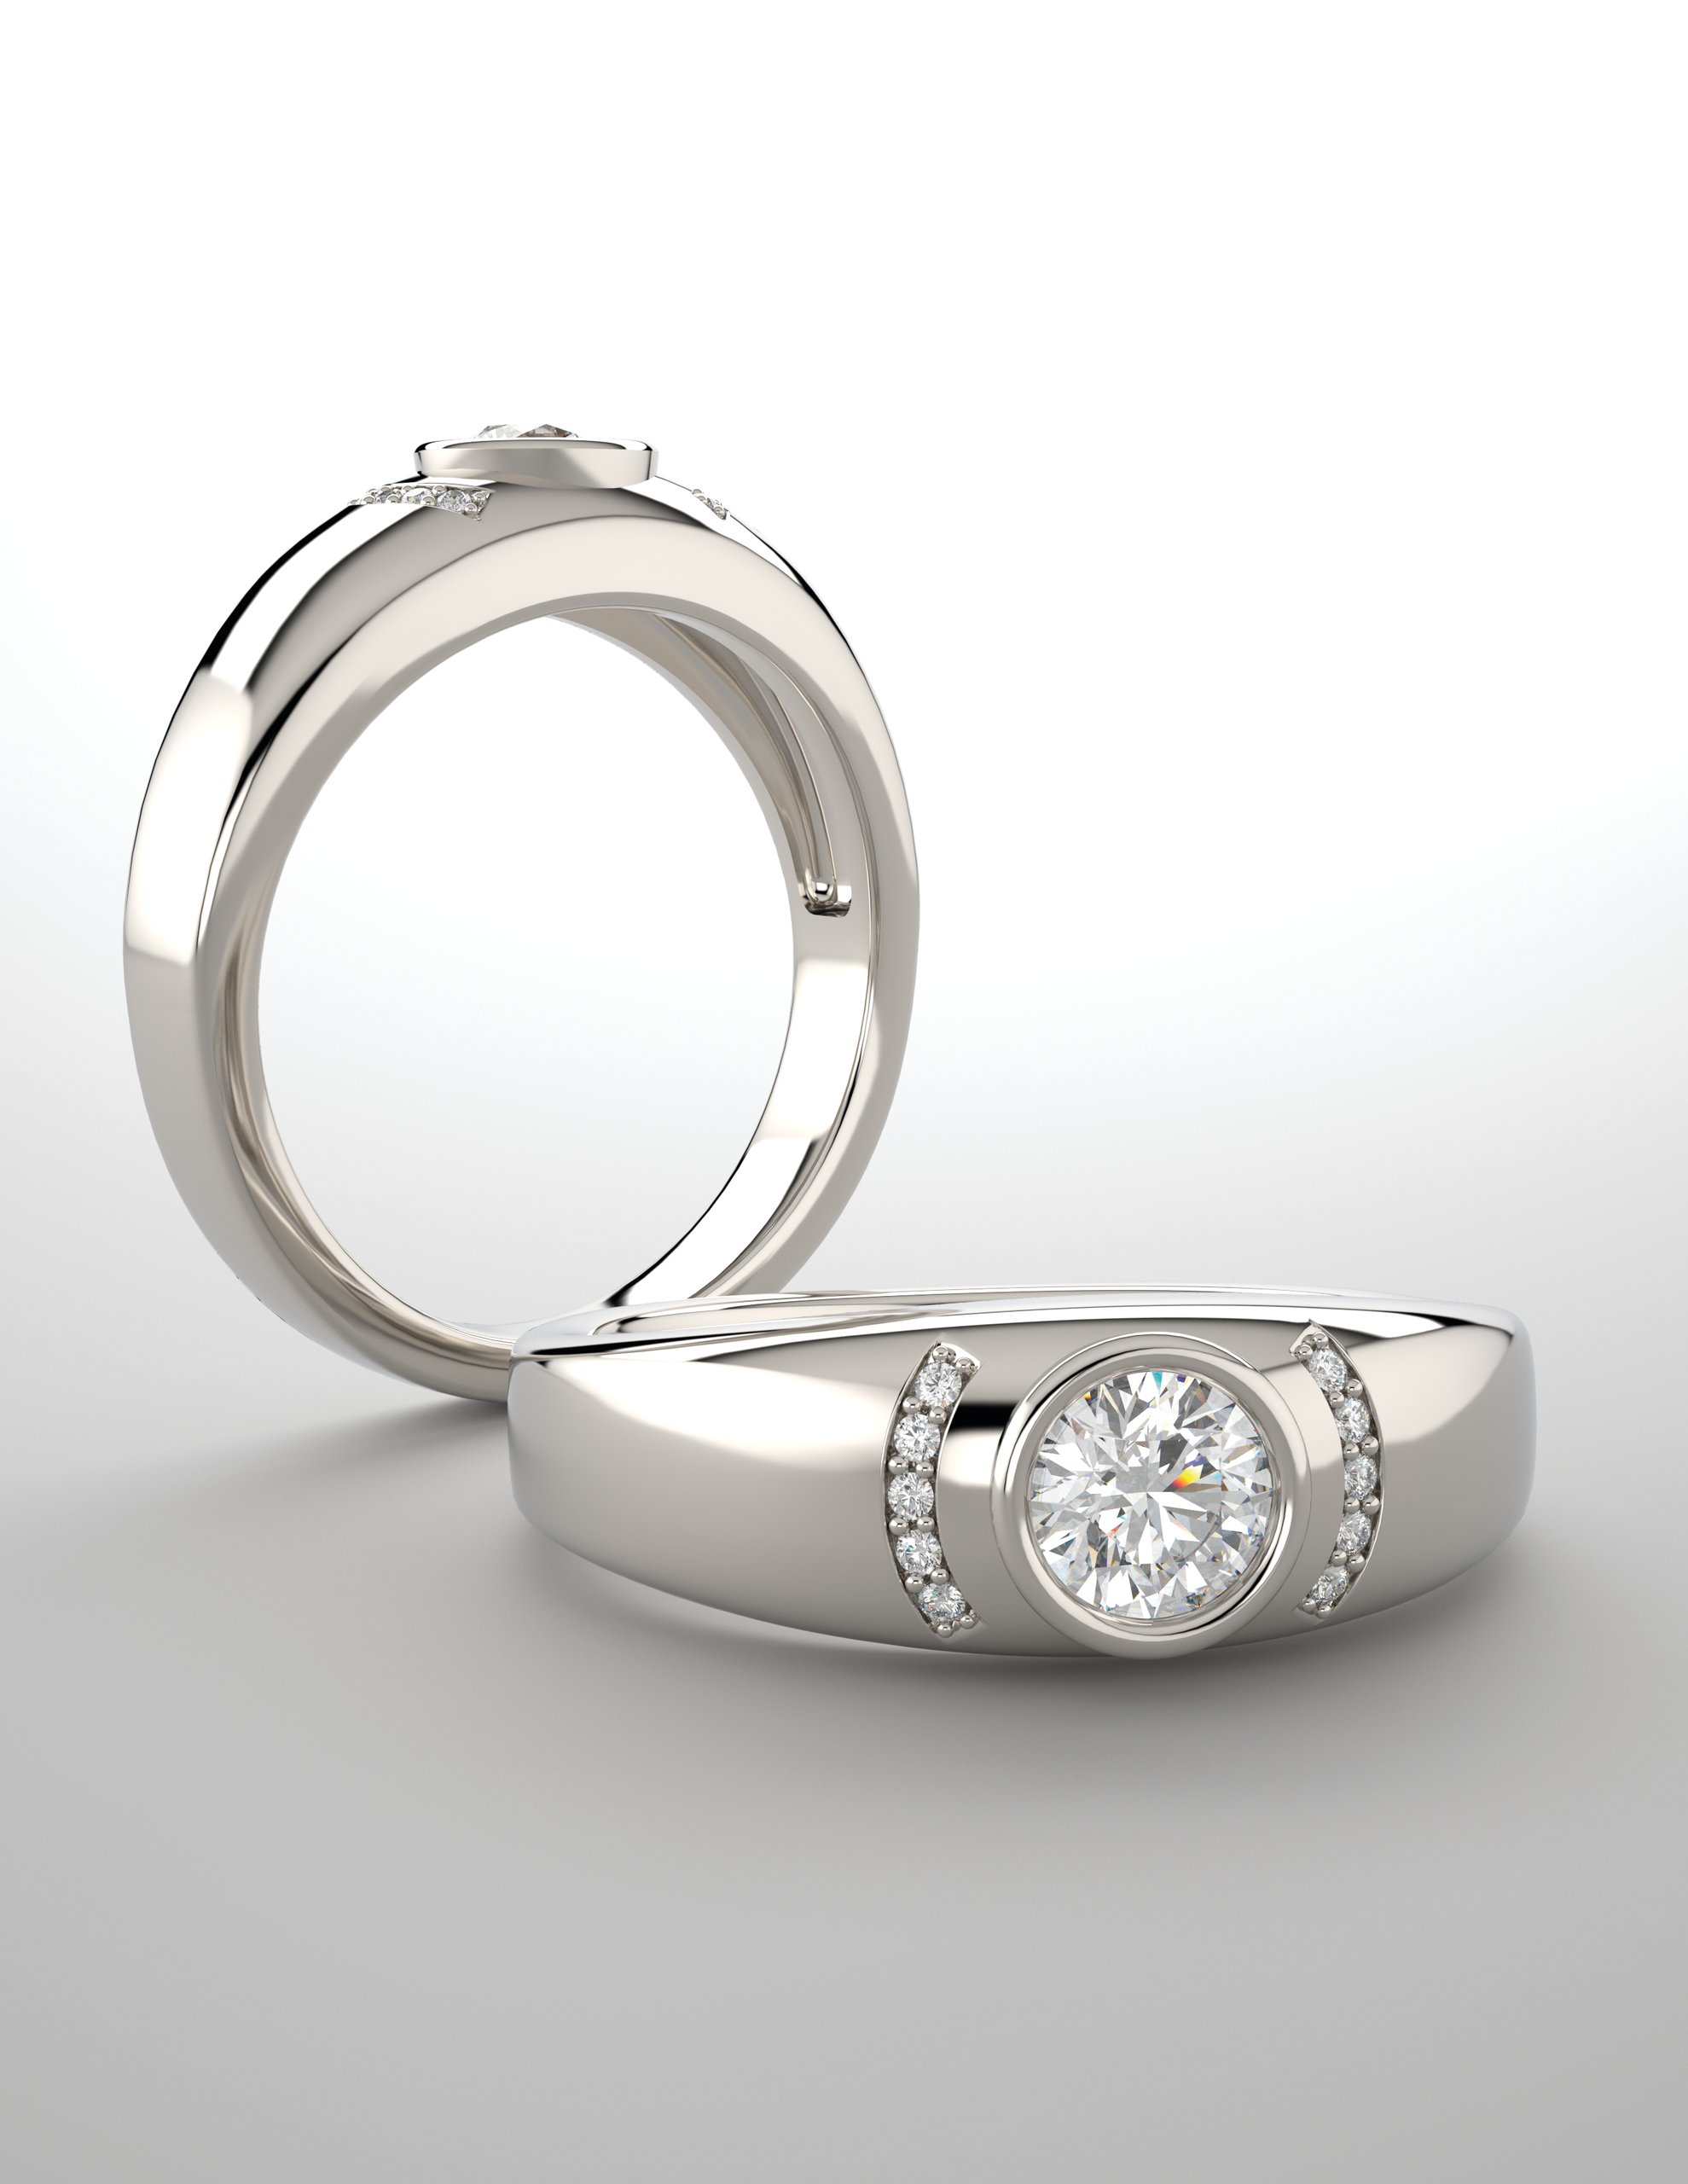 Men's Bezel Ring